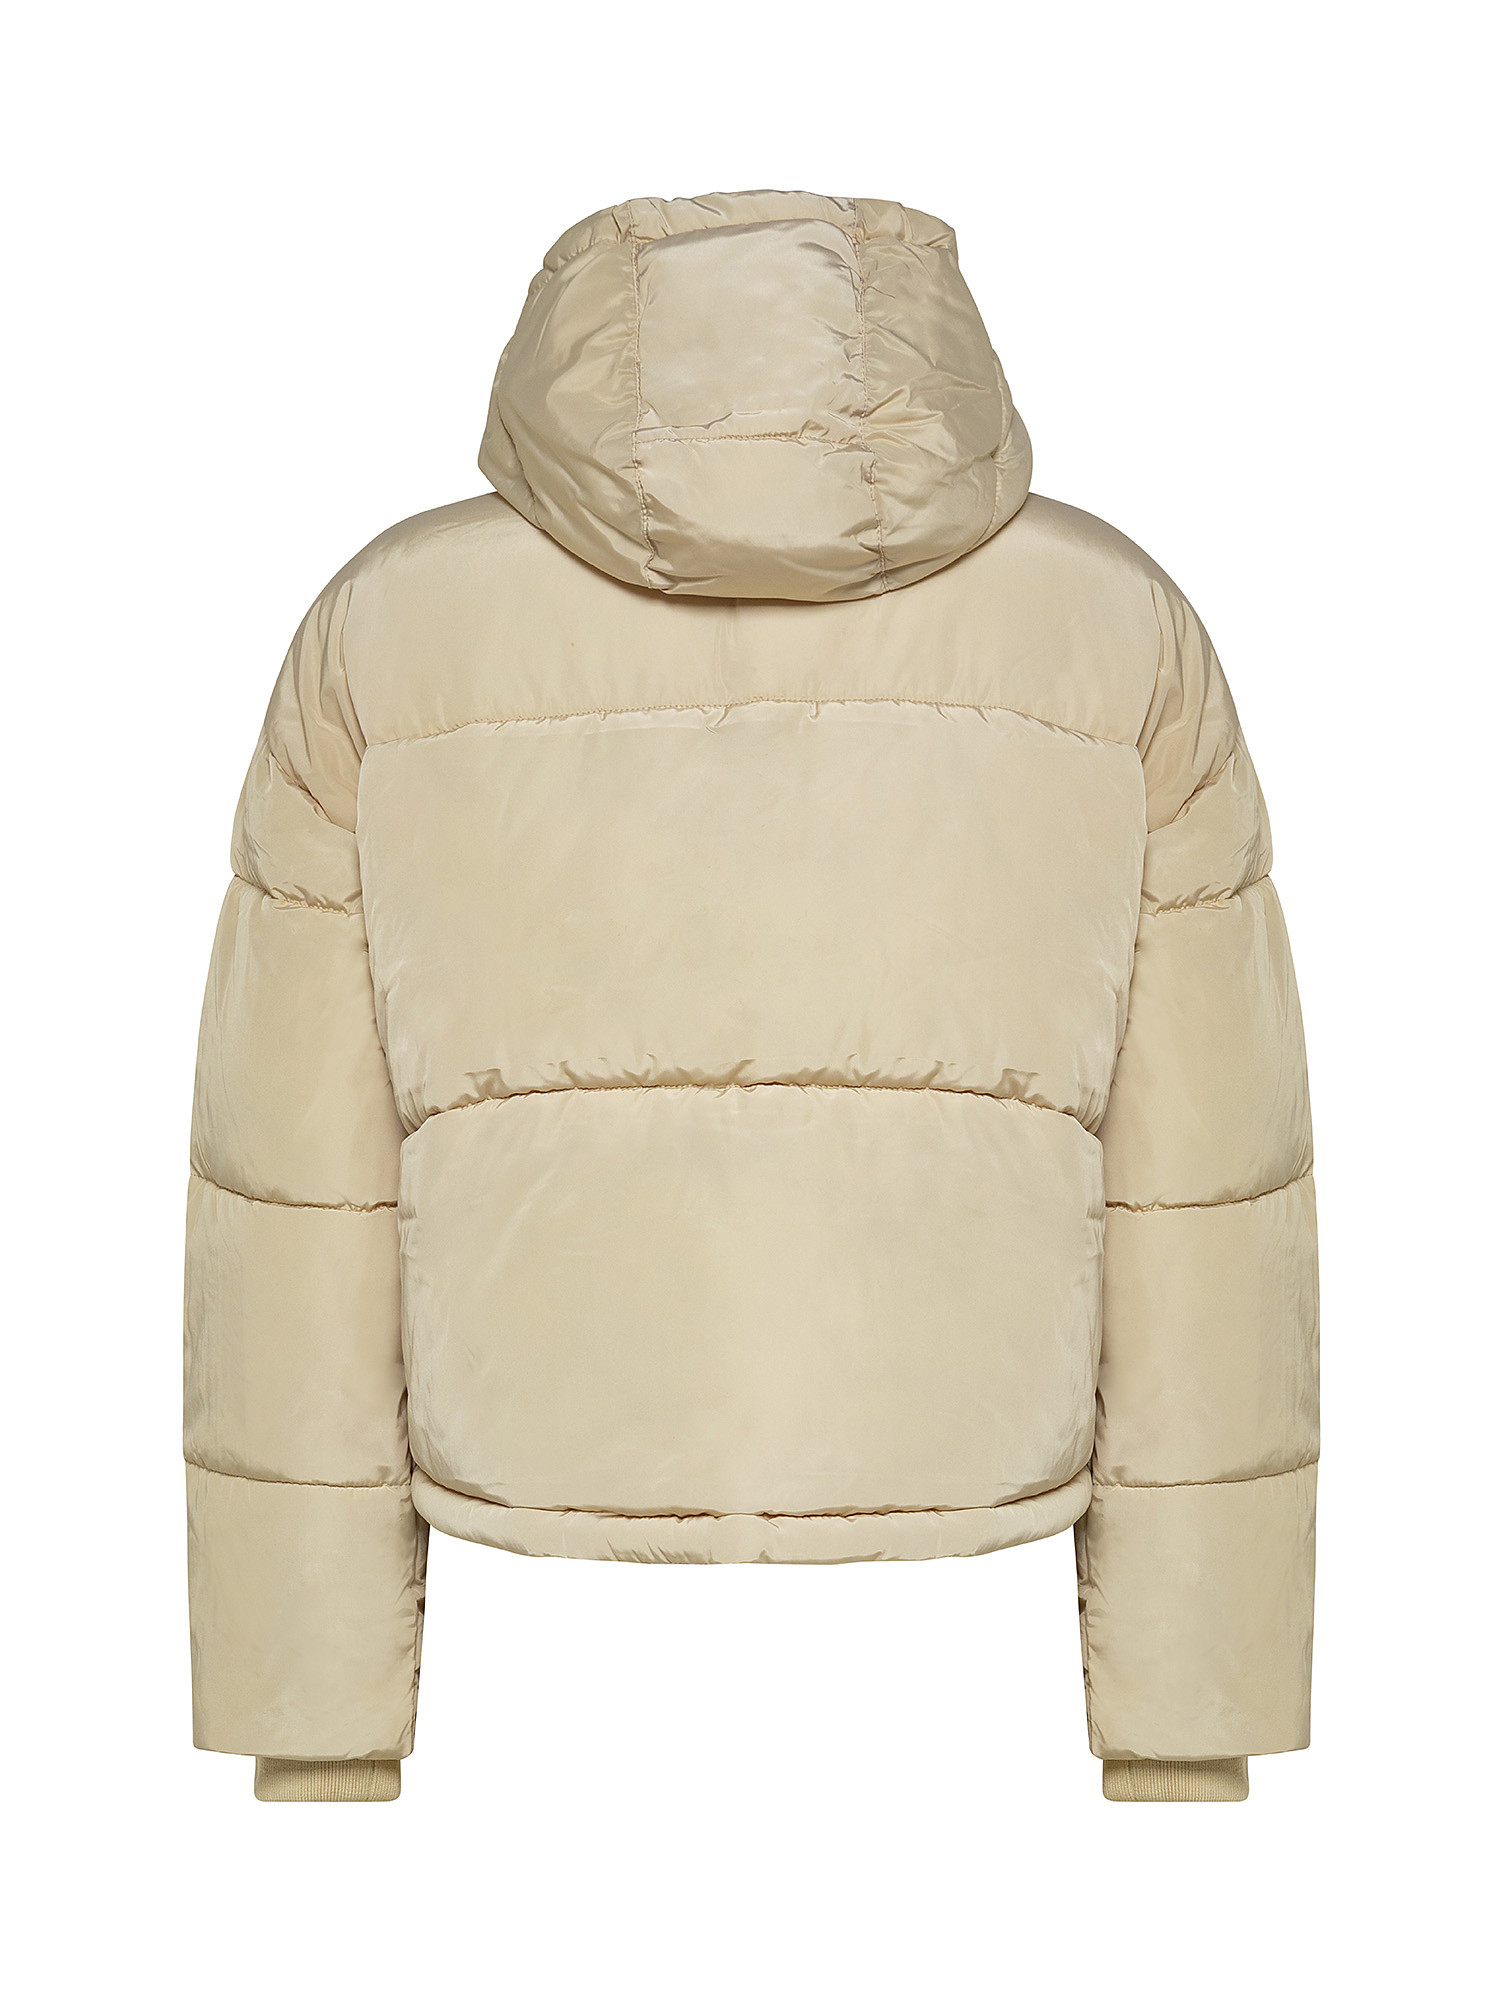 Amandine short padded jacket, White Ivory, large image number 1